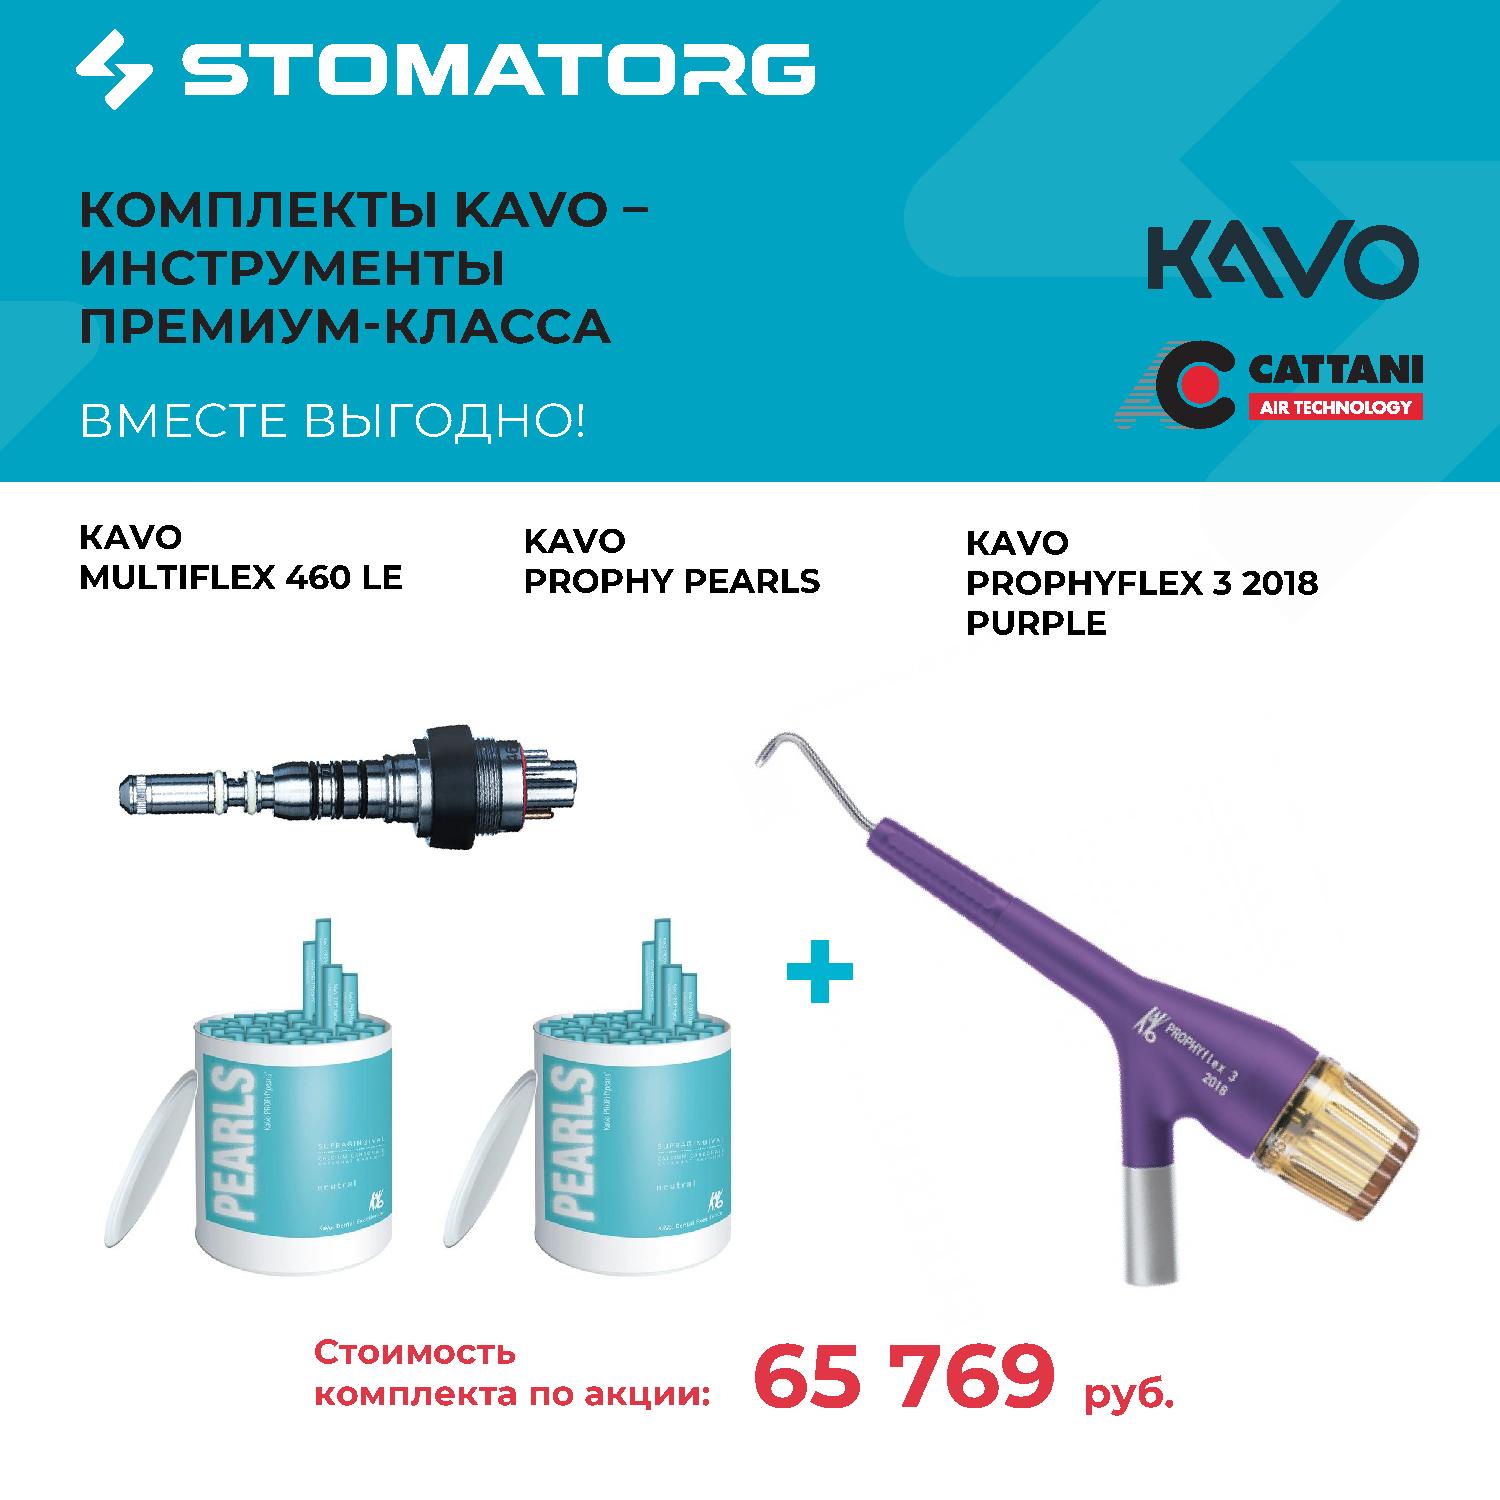 Большая выгода при покупке комплекта инструментов KaVo.